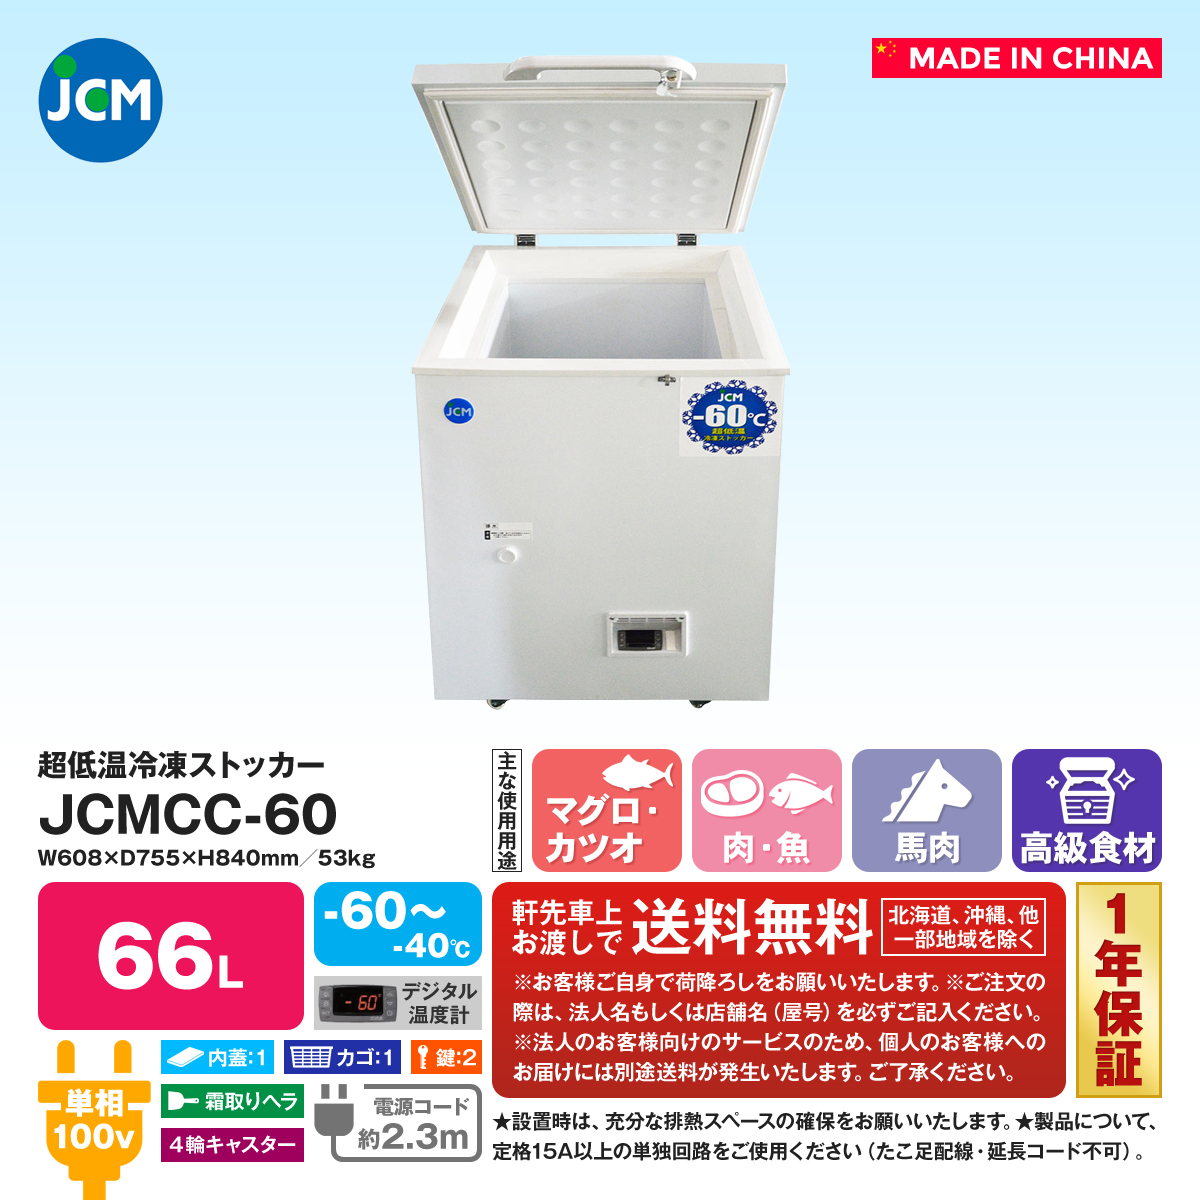 大幅にプライスダウン 超低温冷凍庫のユウキジェーシーエム 超低温冷凍ストッカー JCMCC-60